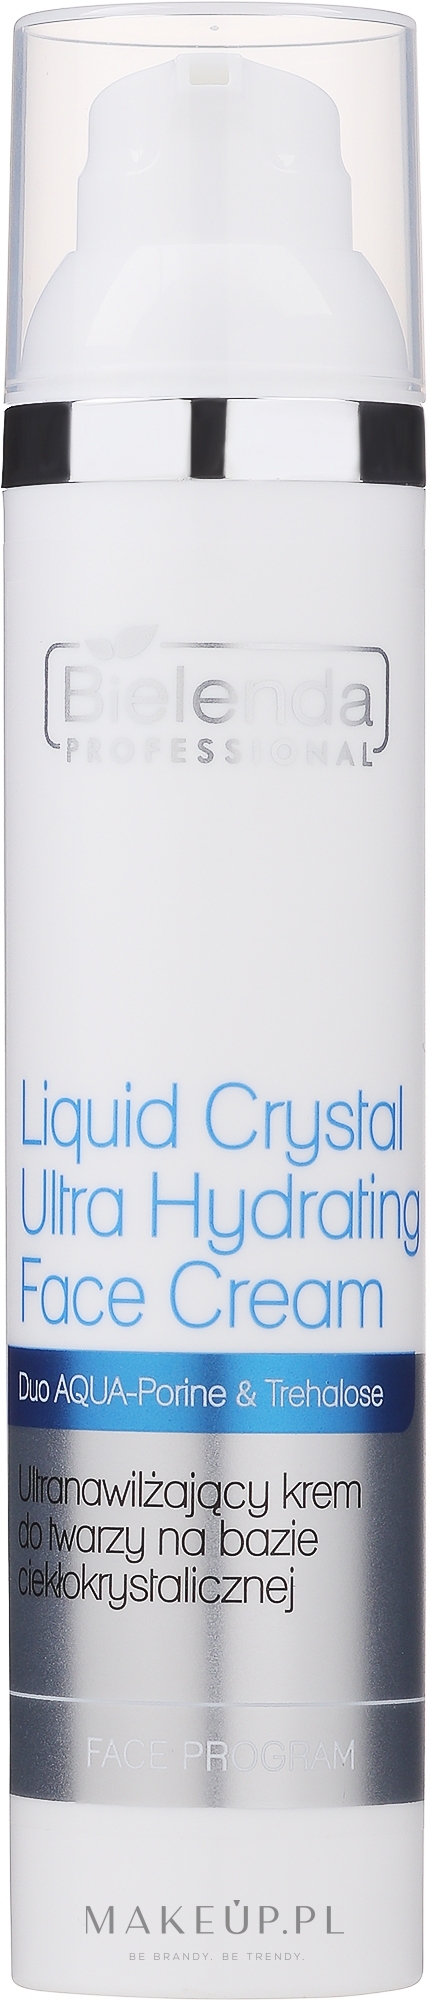 Ultranawilżający krem do twarzy na bazie ciekłokrystalicznej - Bielenda Professional Face Program Liquid Crystal Ultra Hydrating Face Cream — Zdjęcie 100 ml